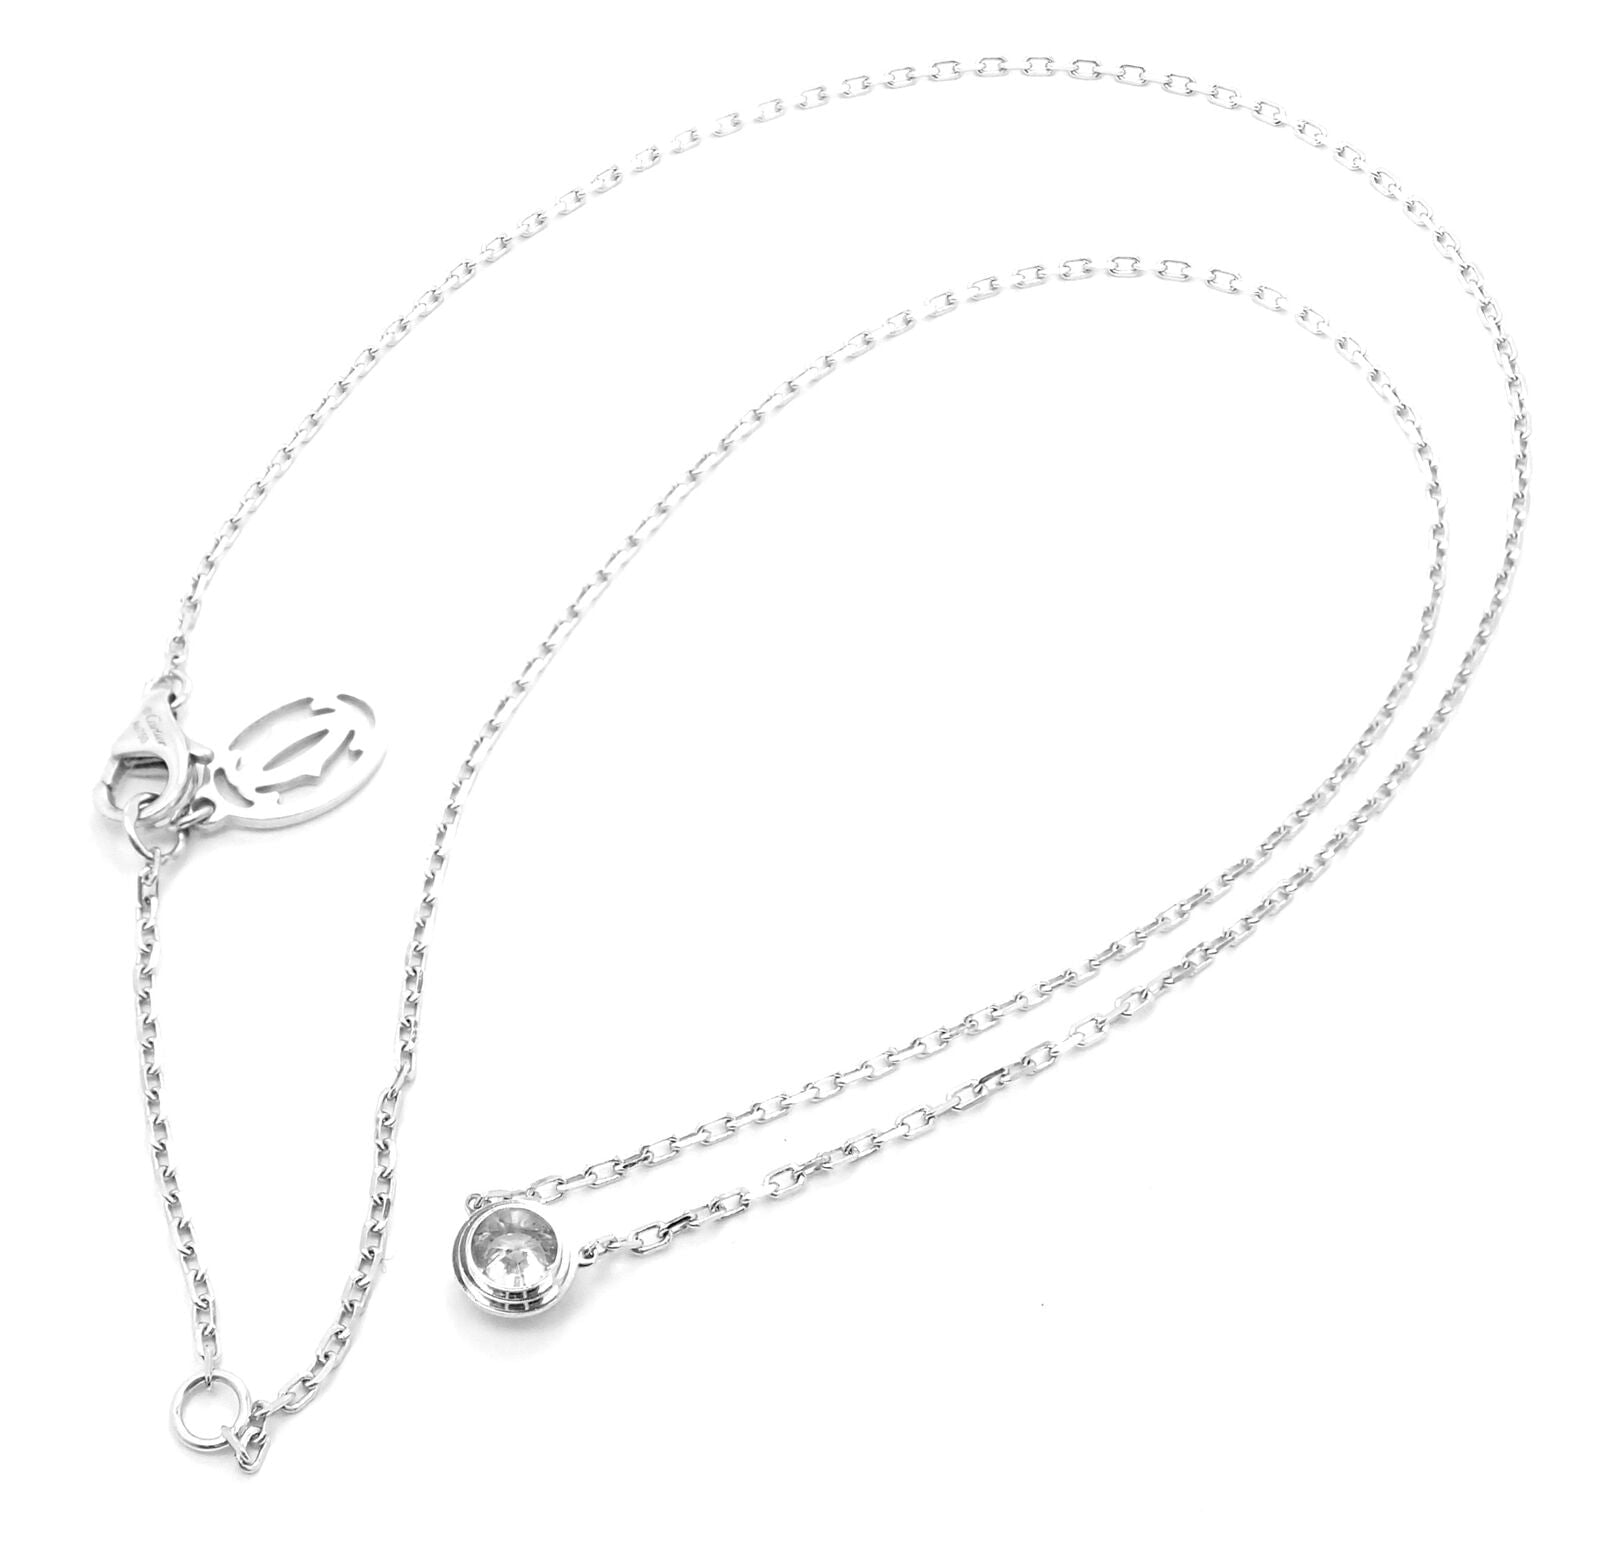 Authentic Cartier d'Amour Large Necklace #260-004-222-2699 | eBay